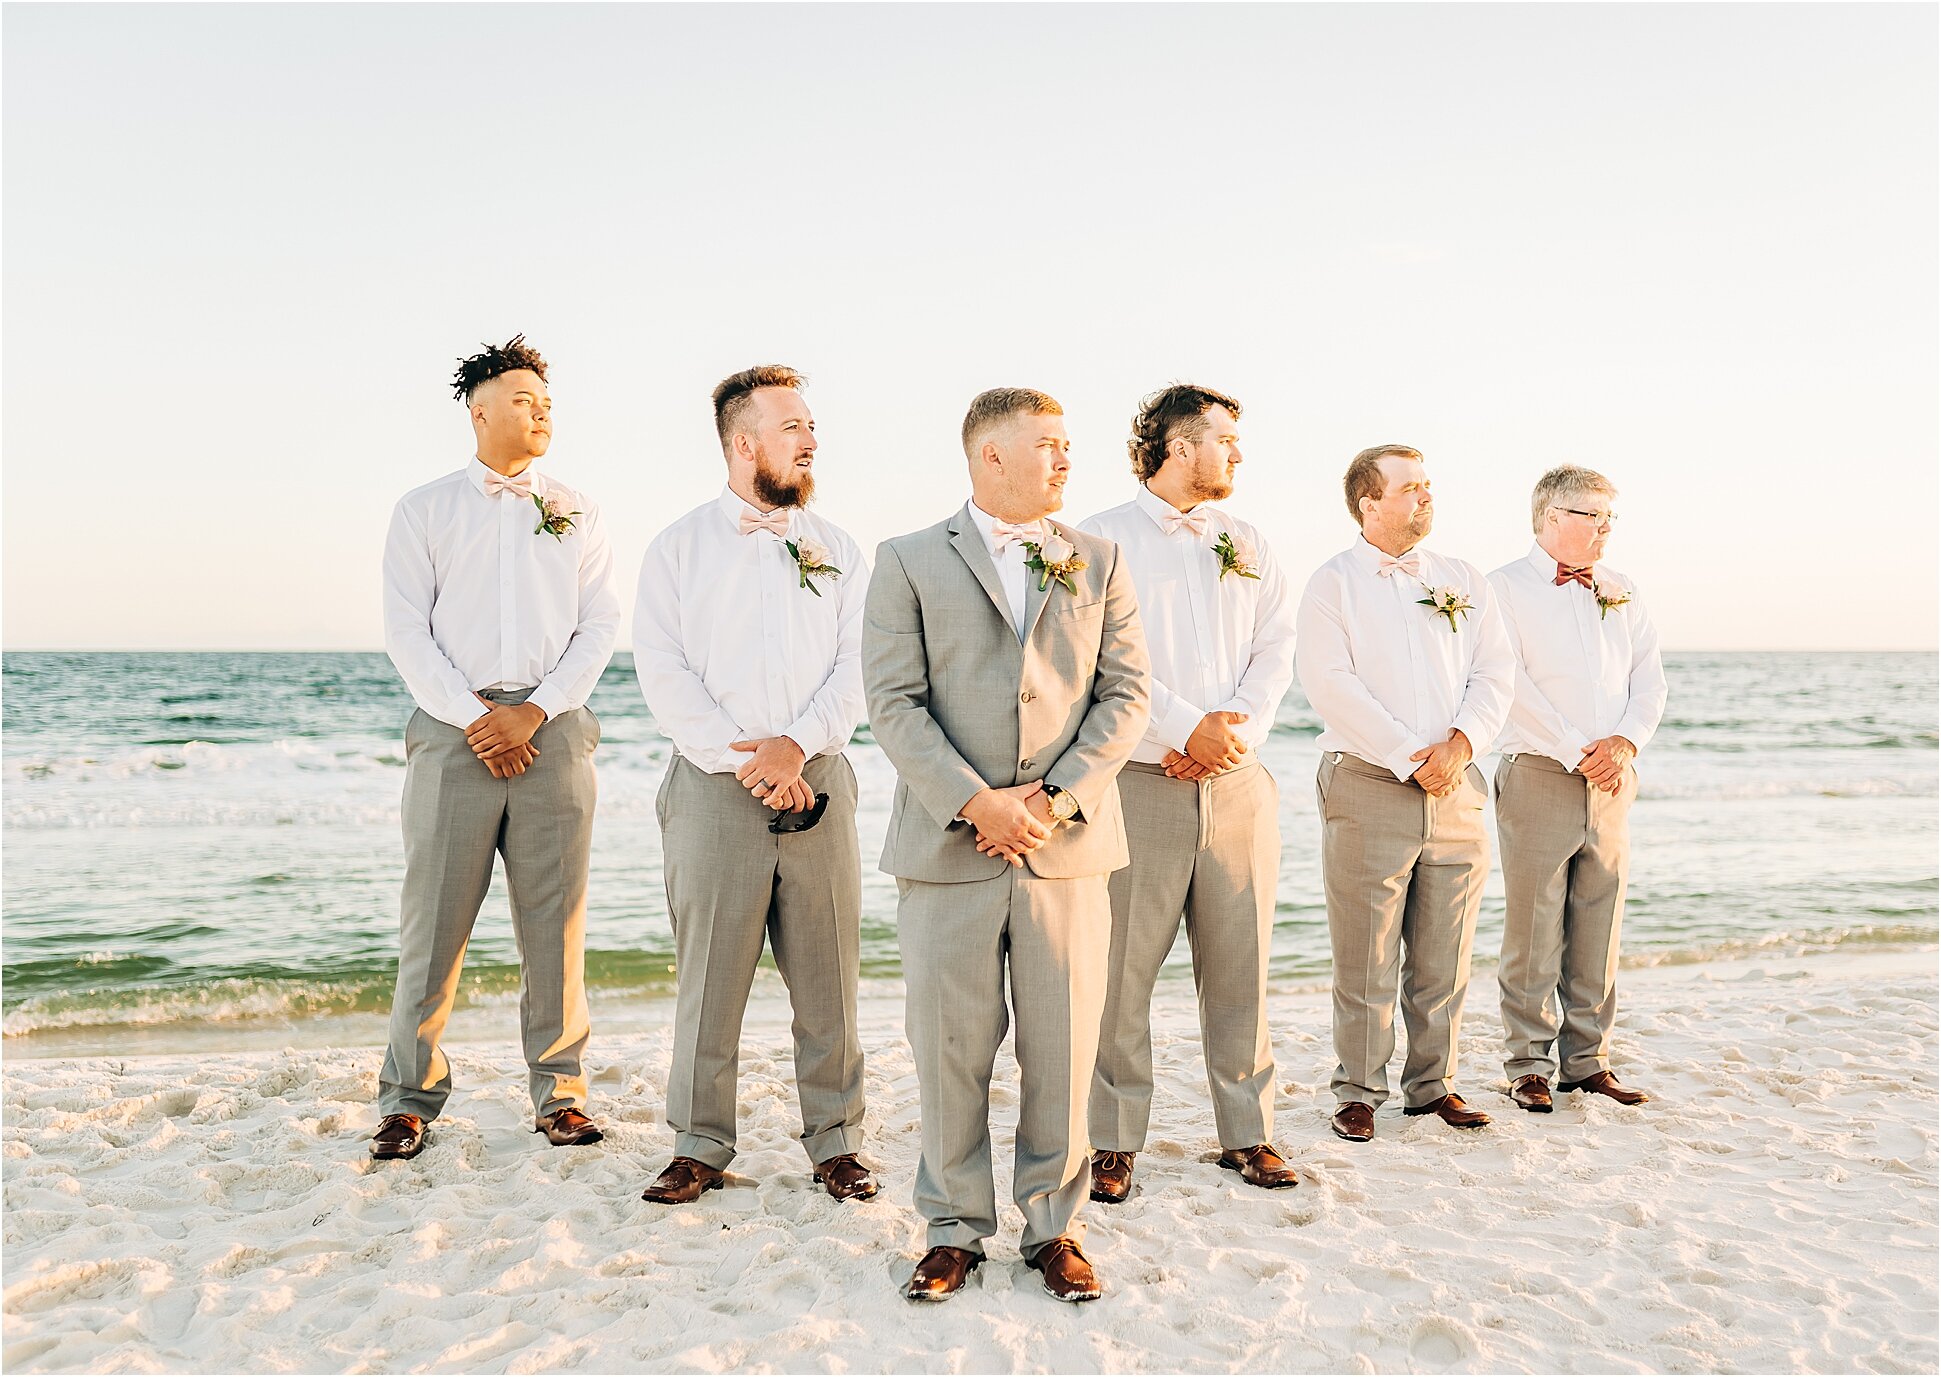 Alabama Beach Weddings: Perfect Sands & Sunsets | Alabama and Florida ...